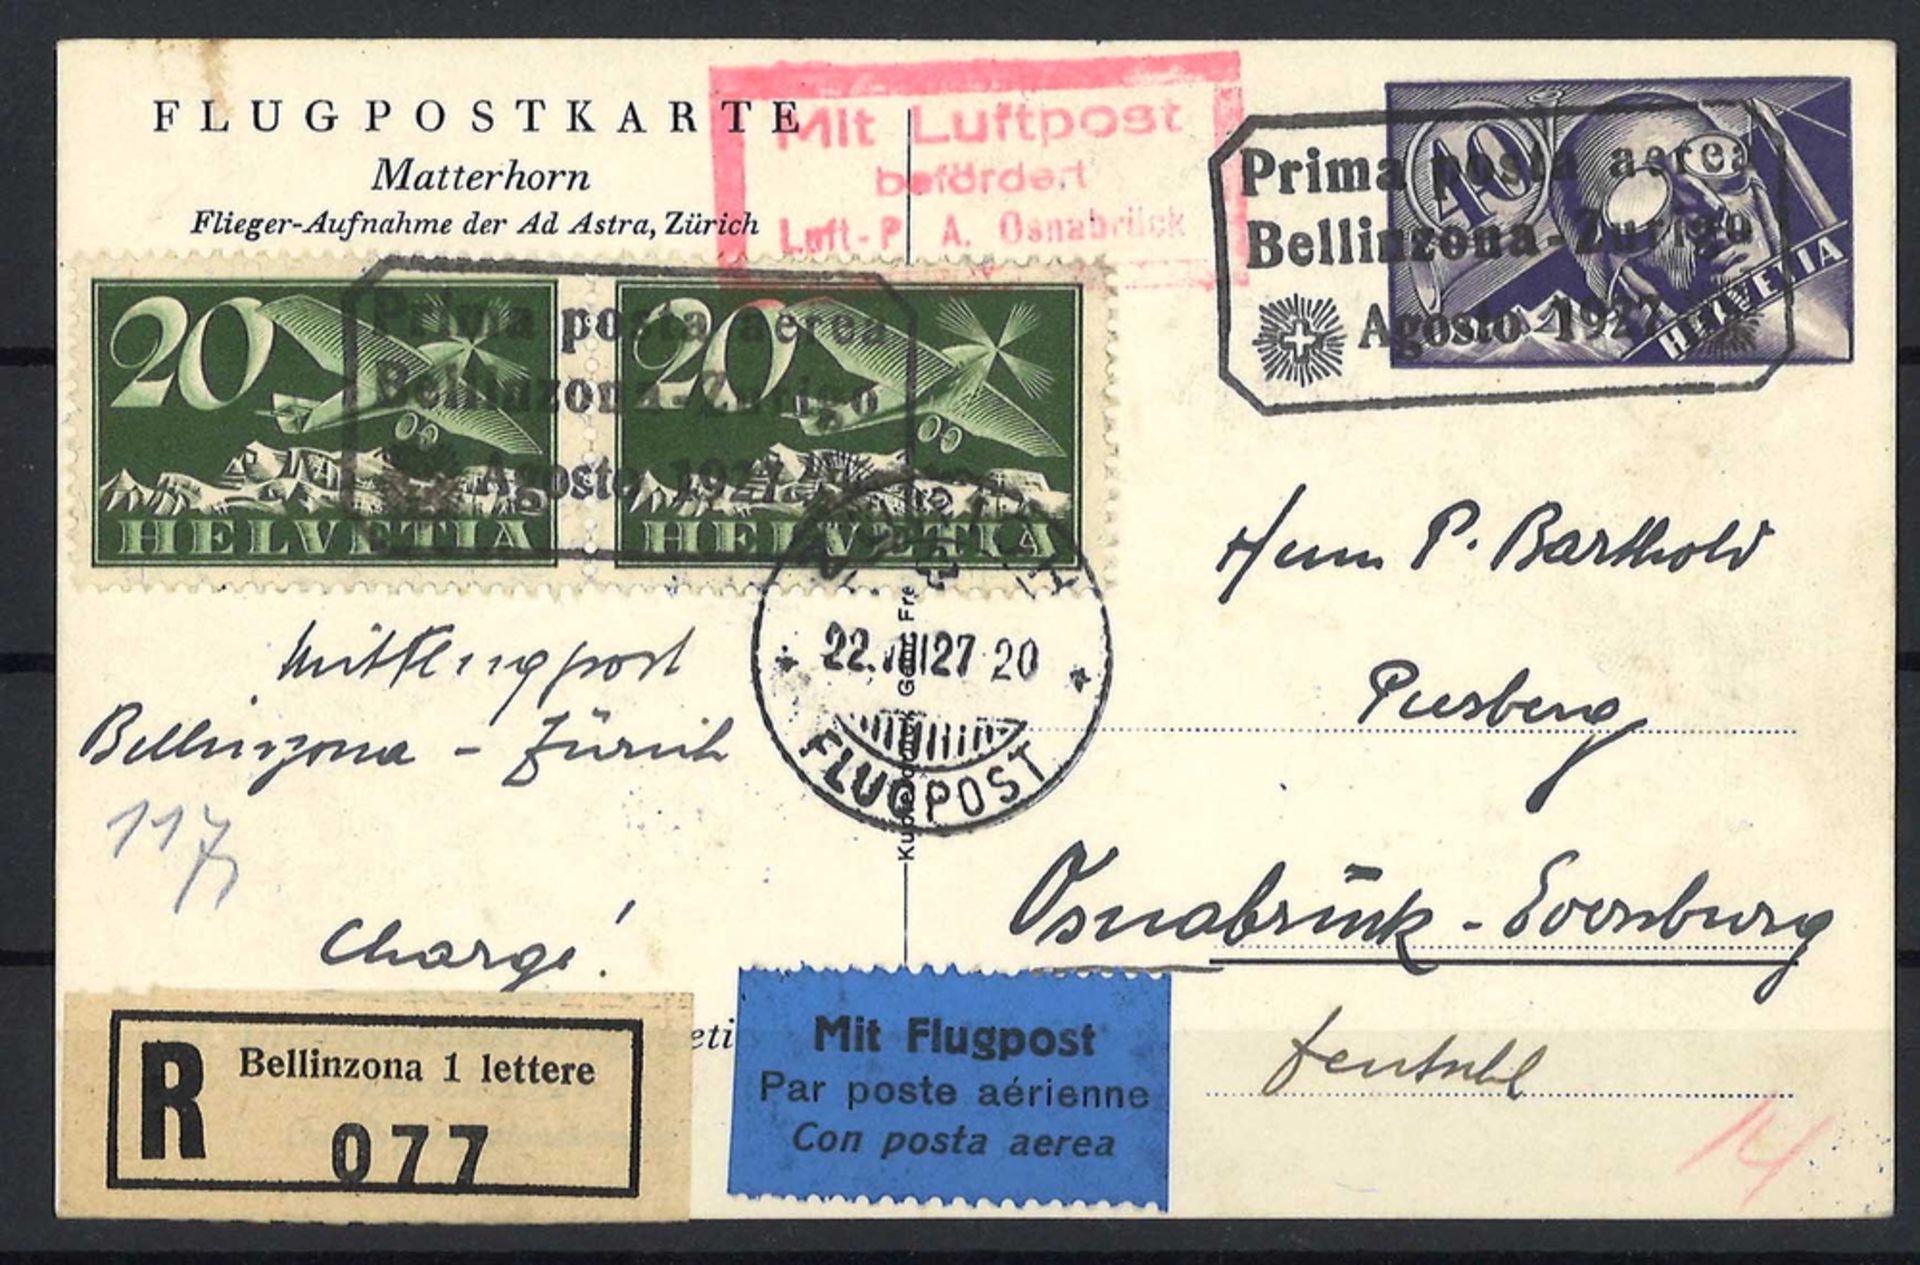 seltene Flugpostkarte Schweiz 1927 Matterhorn, gelaufen. Top Erhaltung